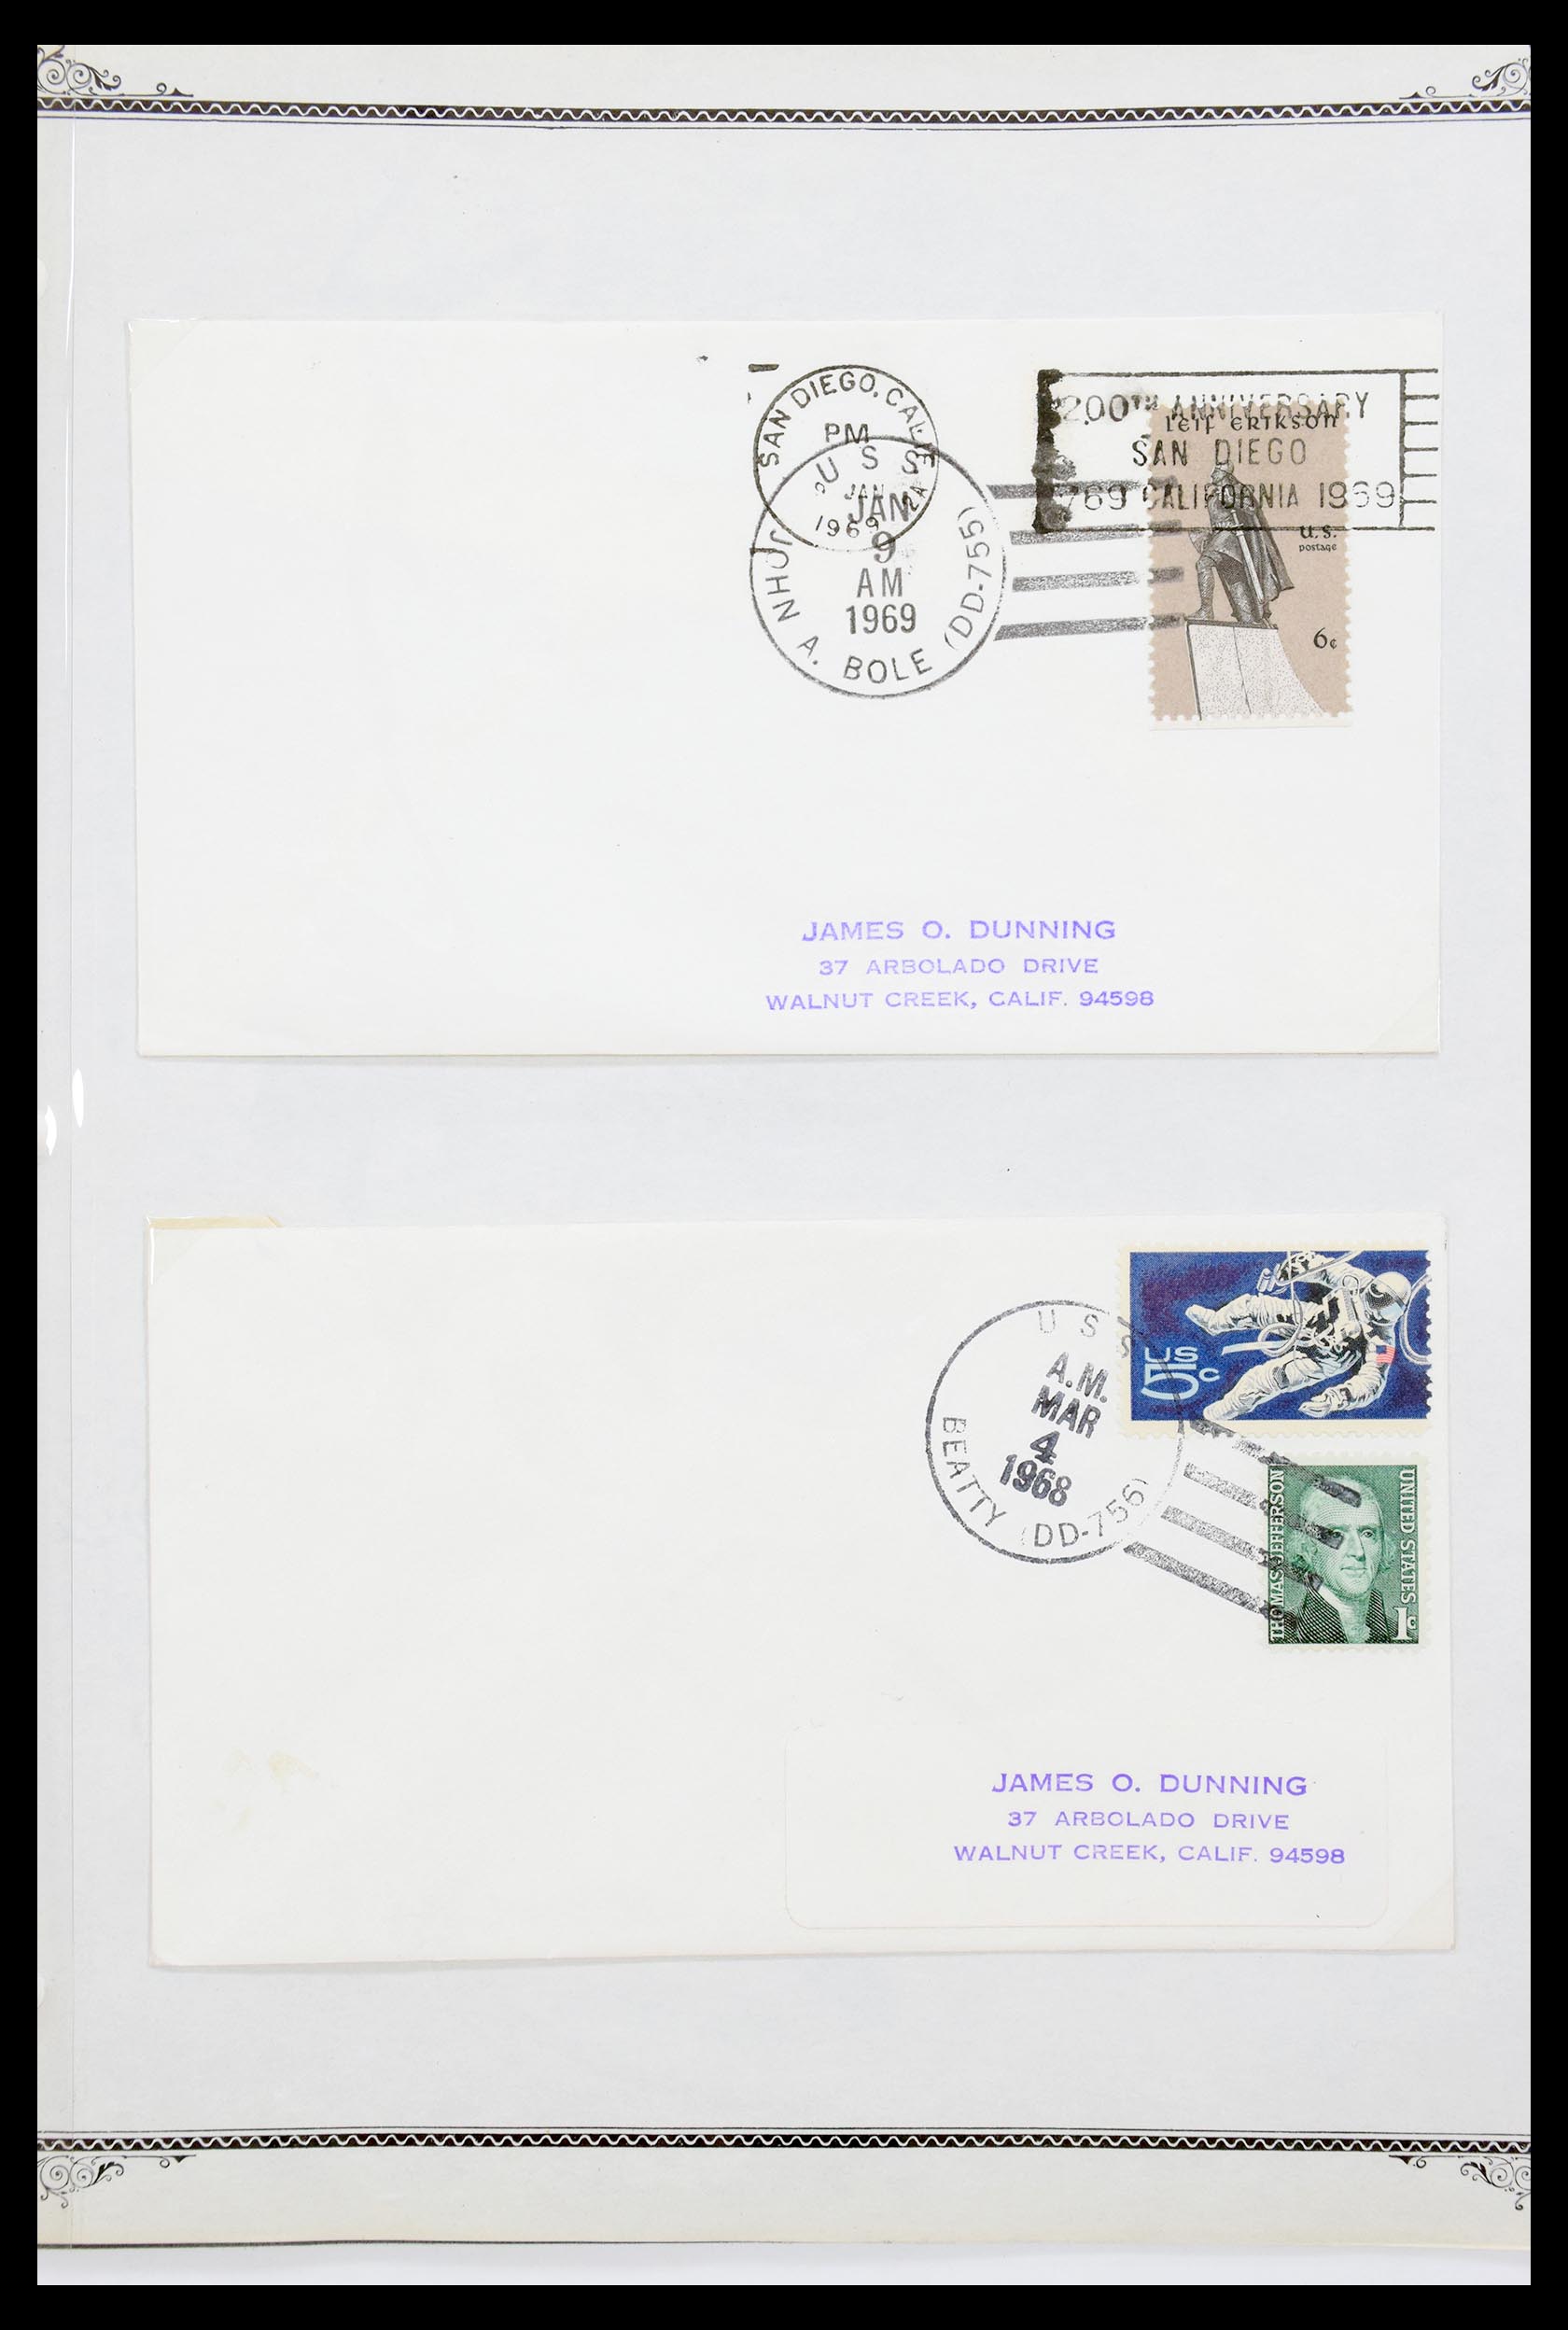 30341 035 - 30341 USA scheepspost brieven 1930-1970.